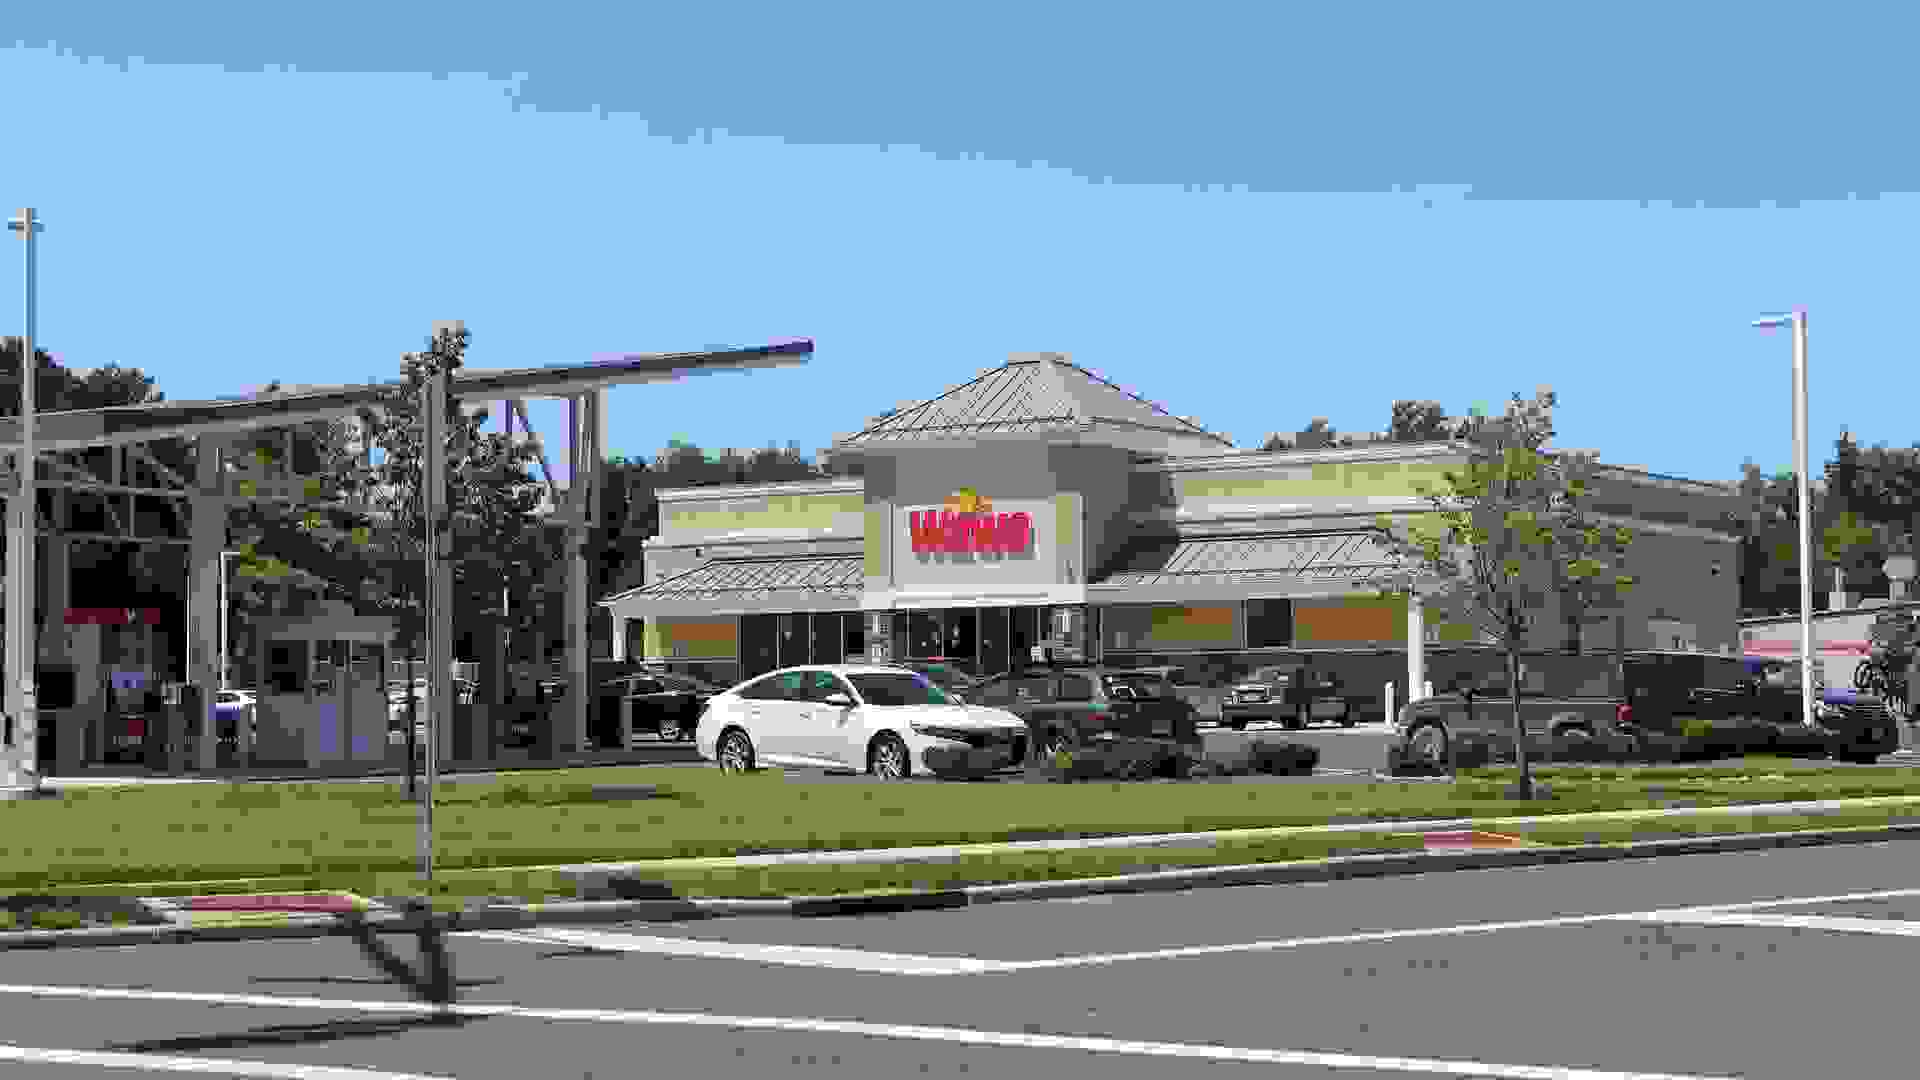 Princeton New Jersey - June 23, 2019:A Wawa convenience store, Wawa Inc.